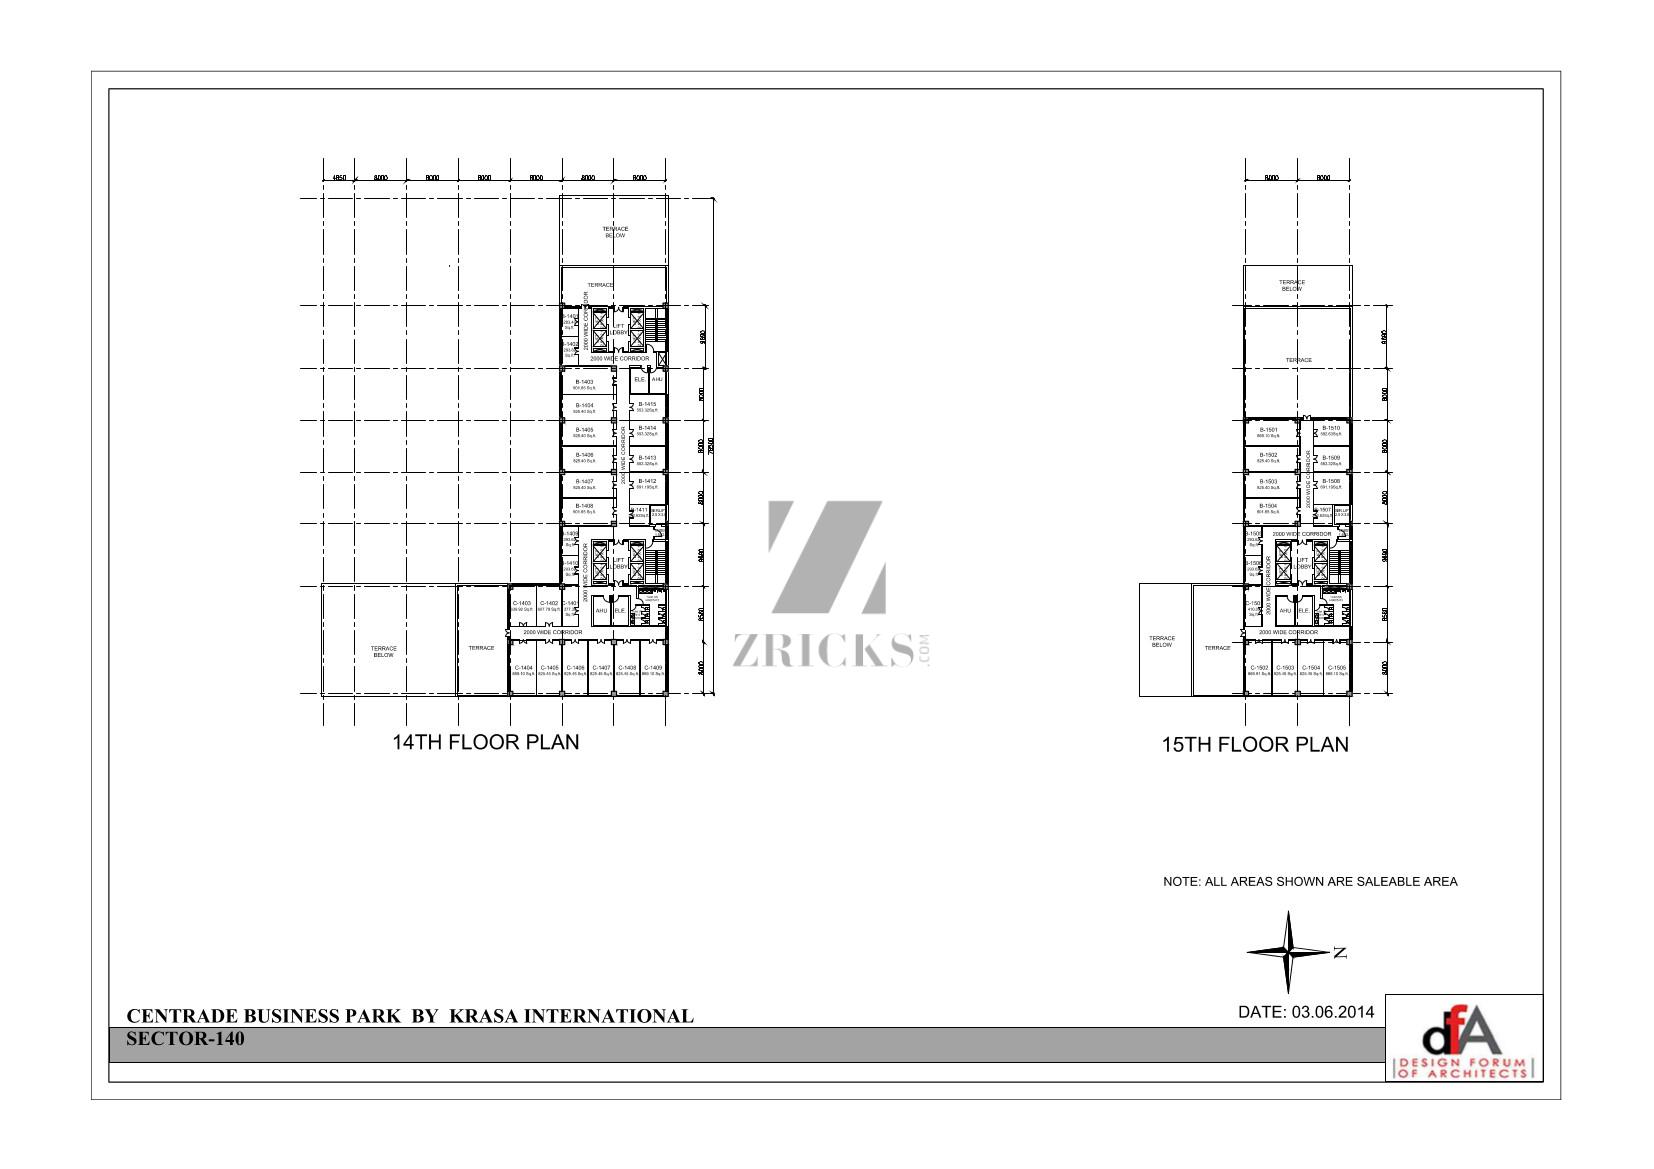 Krasa Centrade Business Park Floor Plan